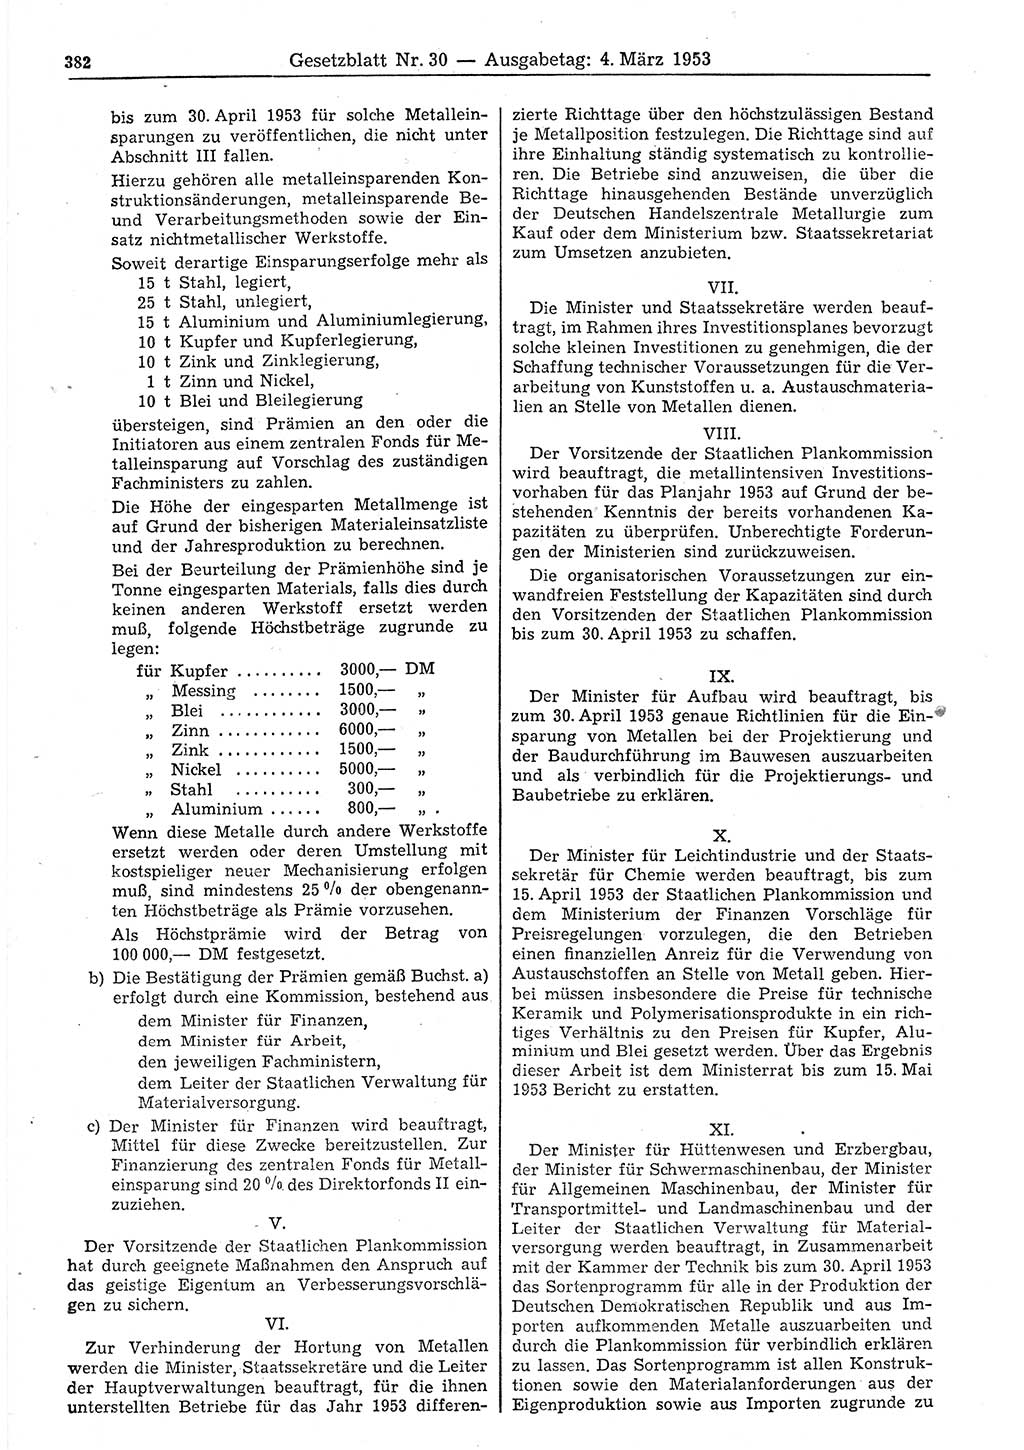 Gesetzblatt (GBl.) der Deutschen Demokratischen Republik (DDR) 1953, Seite 382 (GBl. DDR 1953, S. 382)